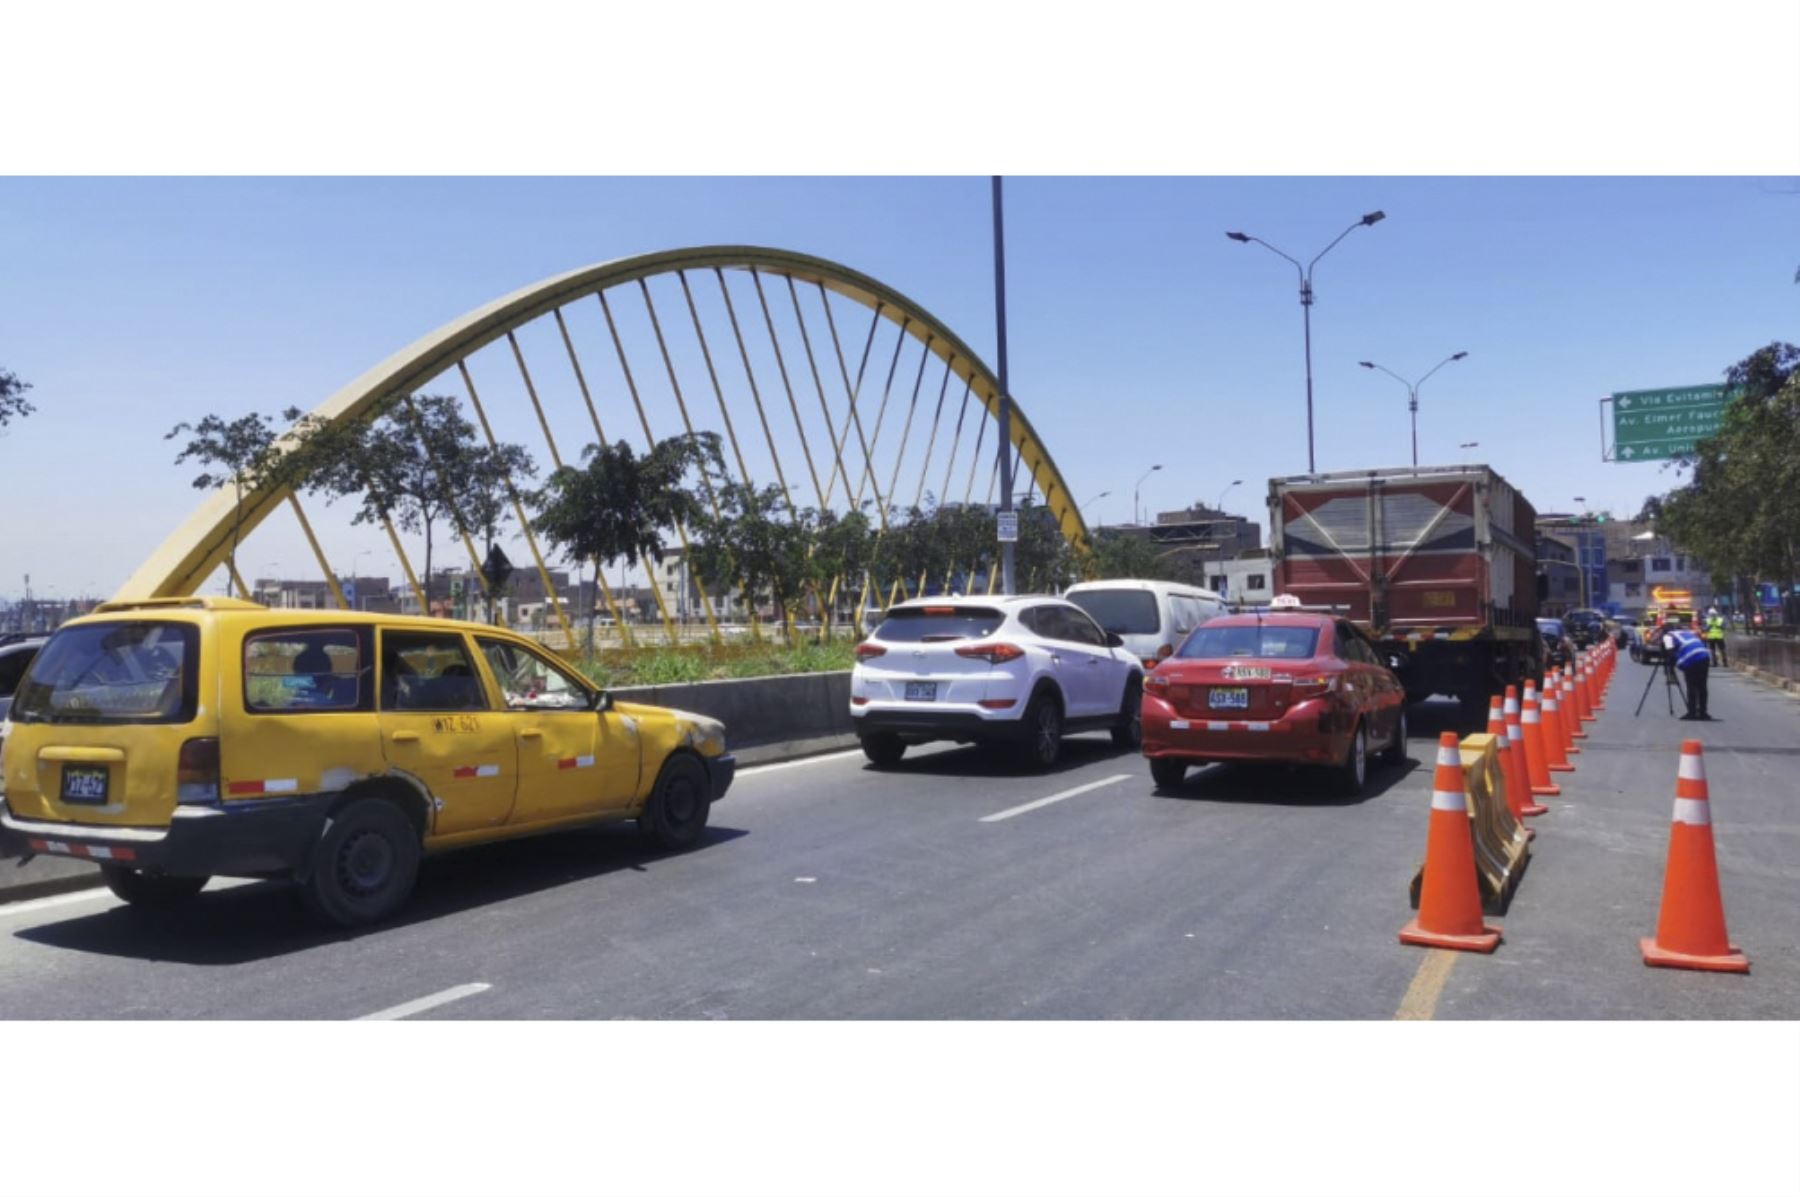 La apertura de la vía es parcial, solo de dos carriles que ya están en funcionamiento, pero uno aún permanecerá cerrado, informó la Municipalidad de Lima. Foto: ANDINA/Municipalidad de LIma